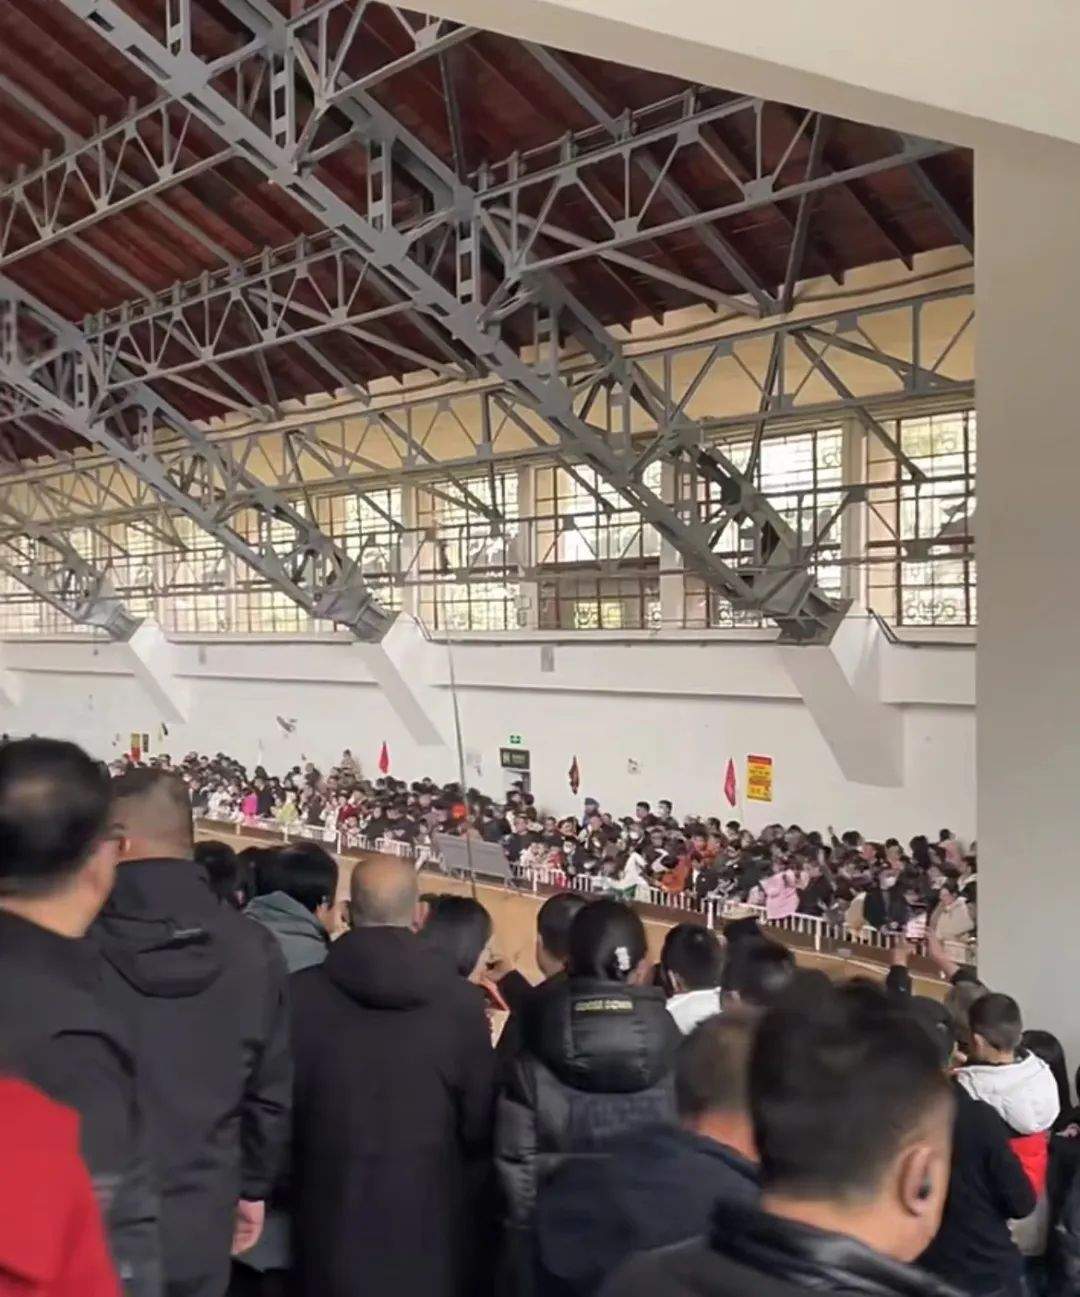 “景区挤爆图”上新！北京地铁封站，大理洱海骑行“堵车”